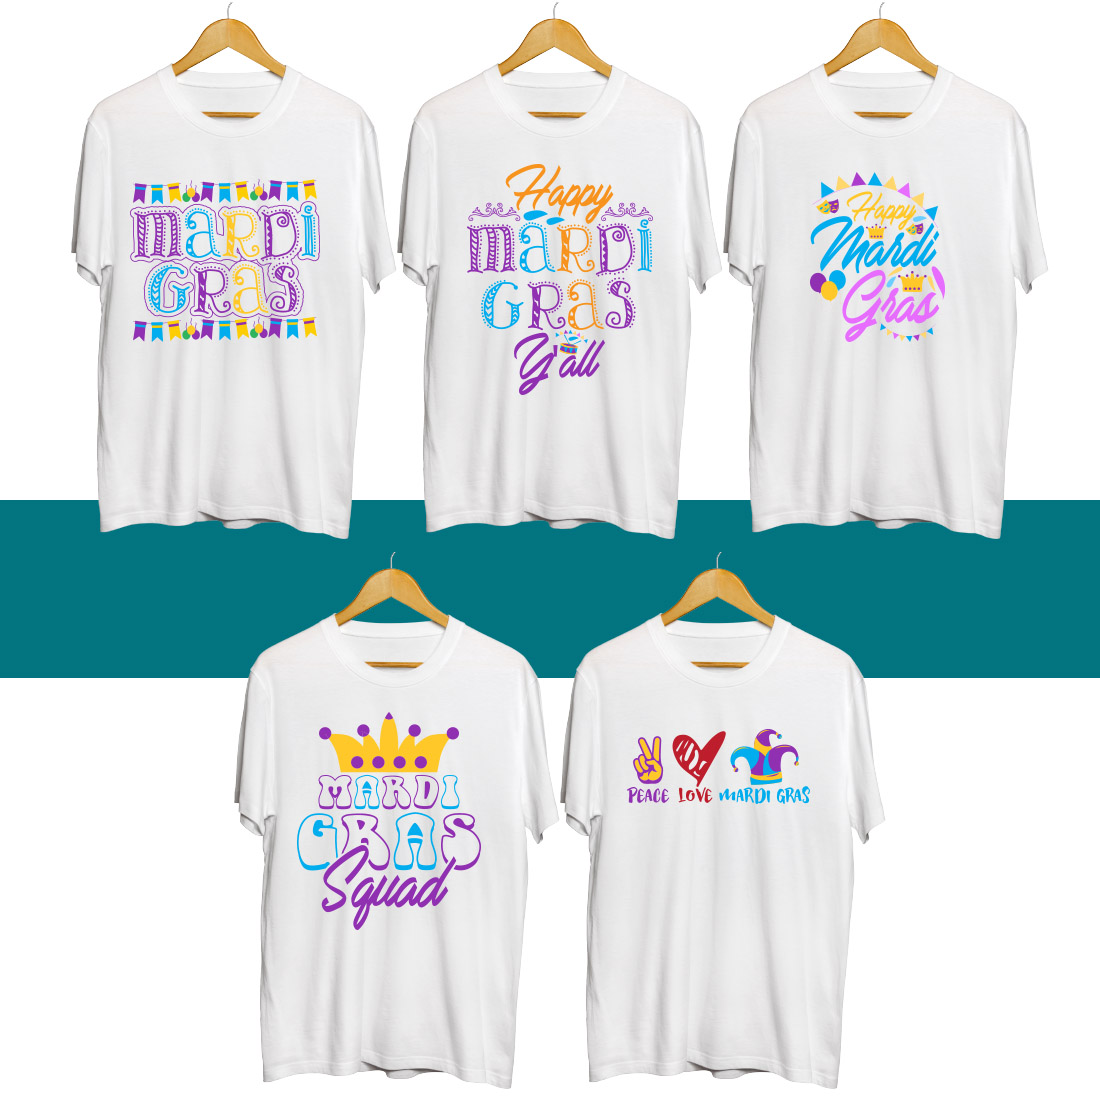 Mardi Gras SVG T Shirt Designs Bundle cover image.